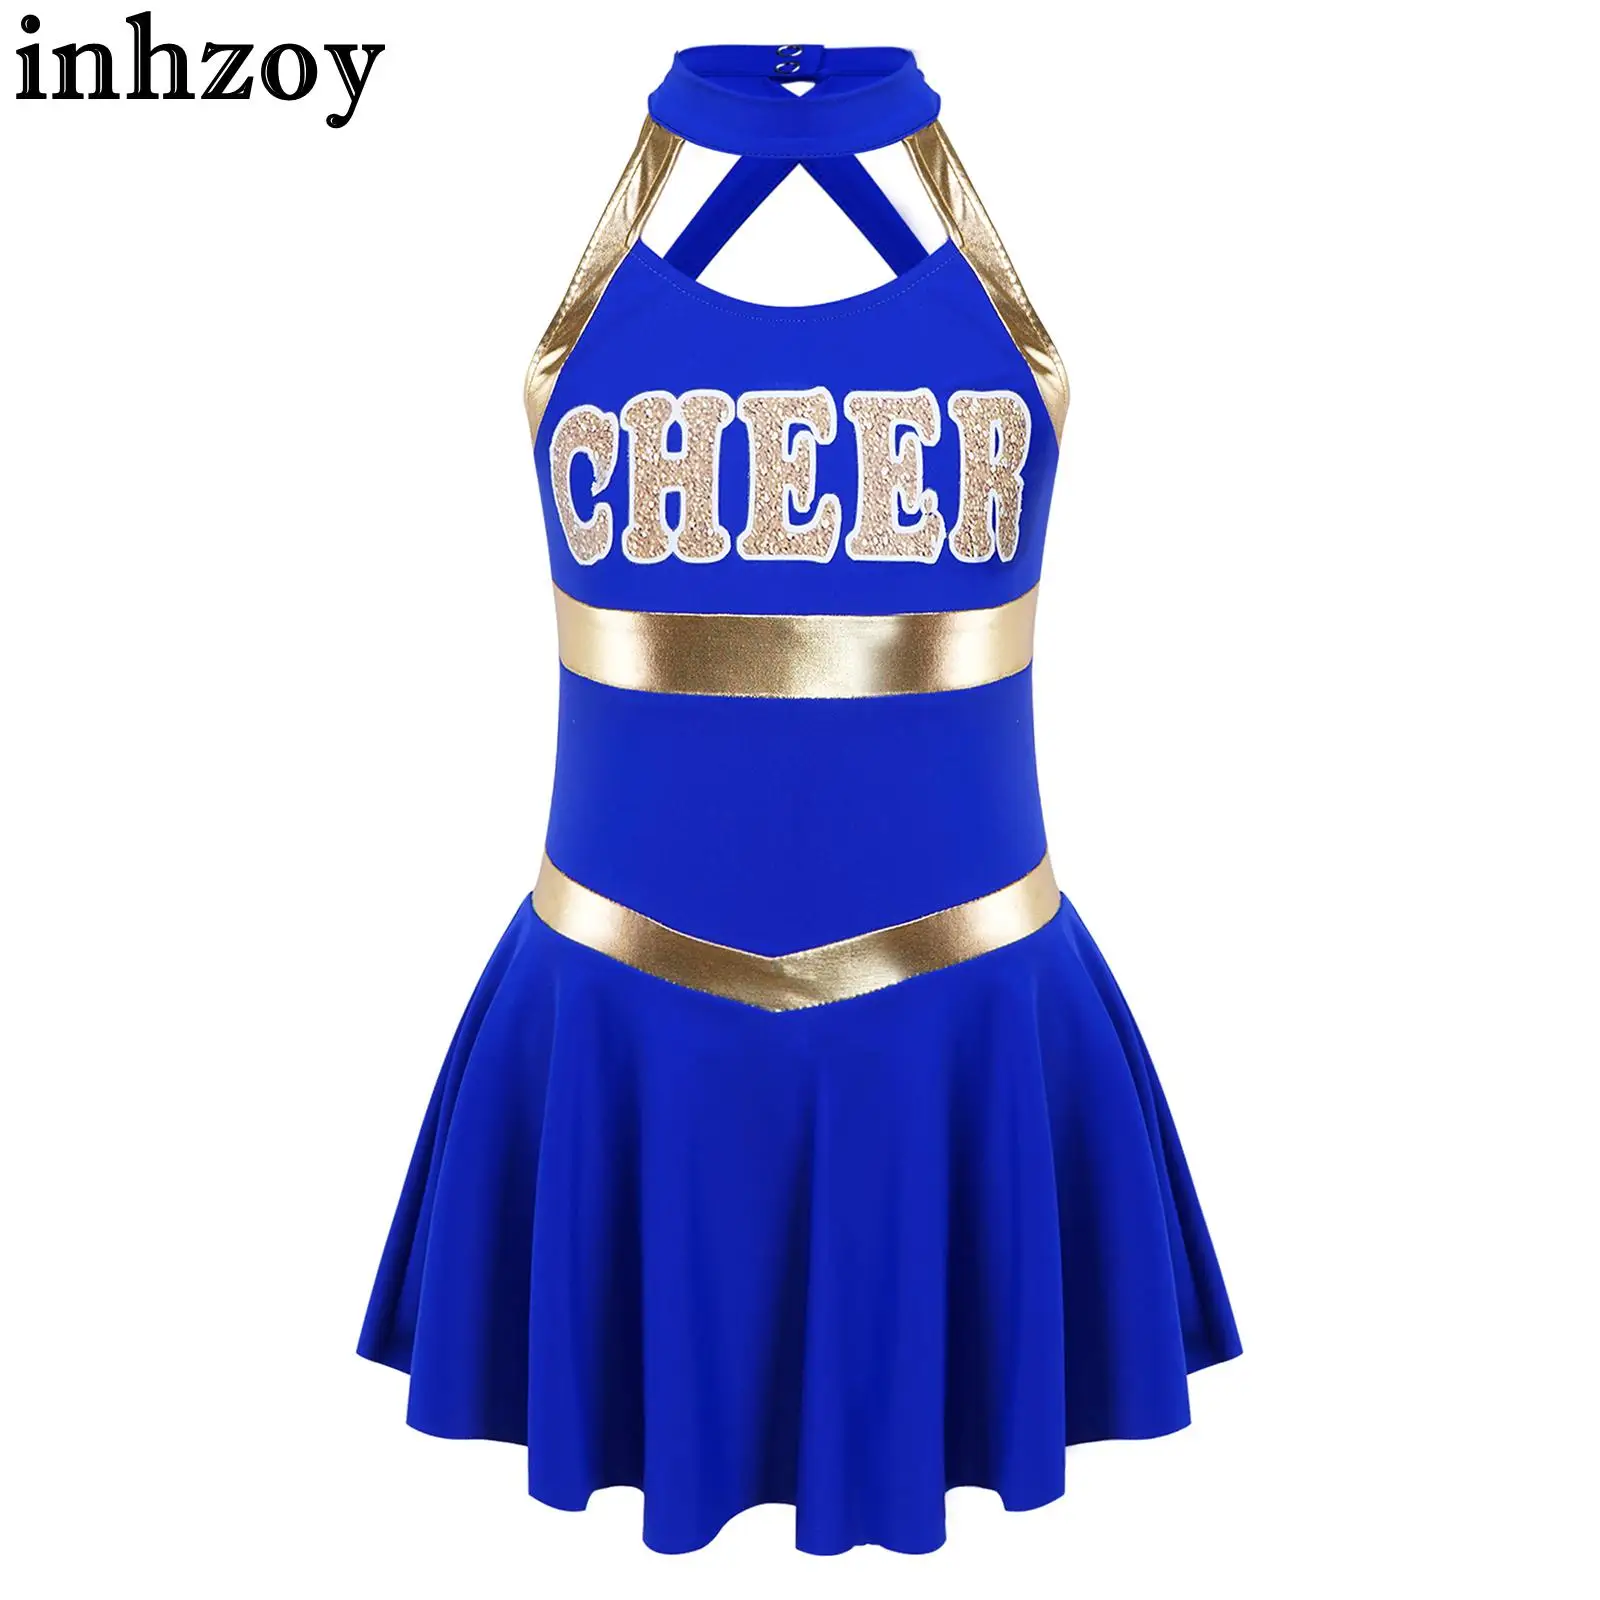 

Kids Girls Cheerleading Uniform Dance Dress Sleeveless Halter Neck Letter Print Crisscross Straps Hollow Back Dress Costume